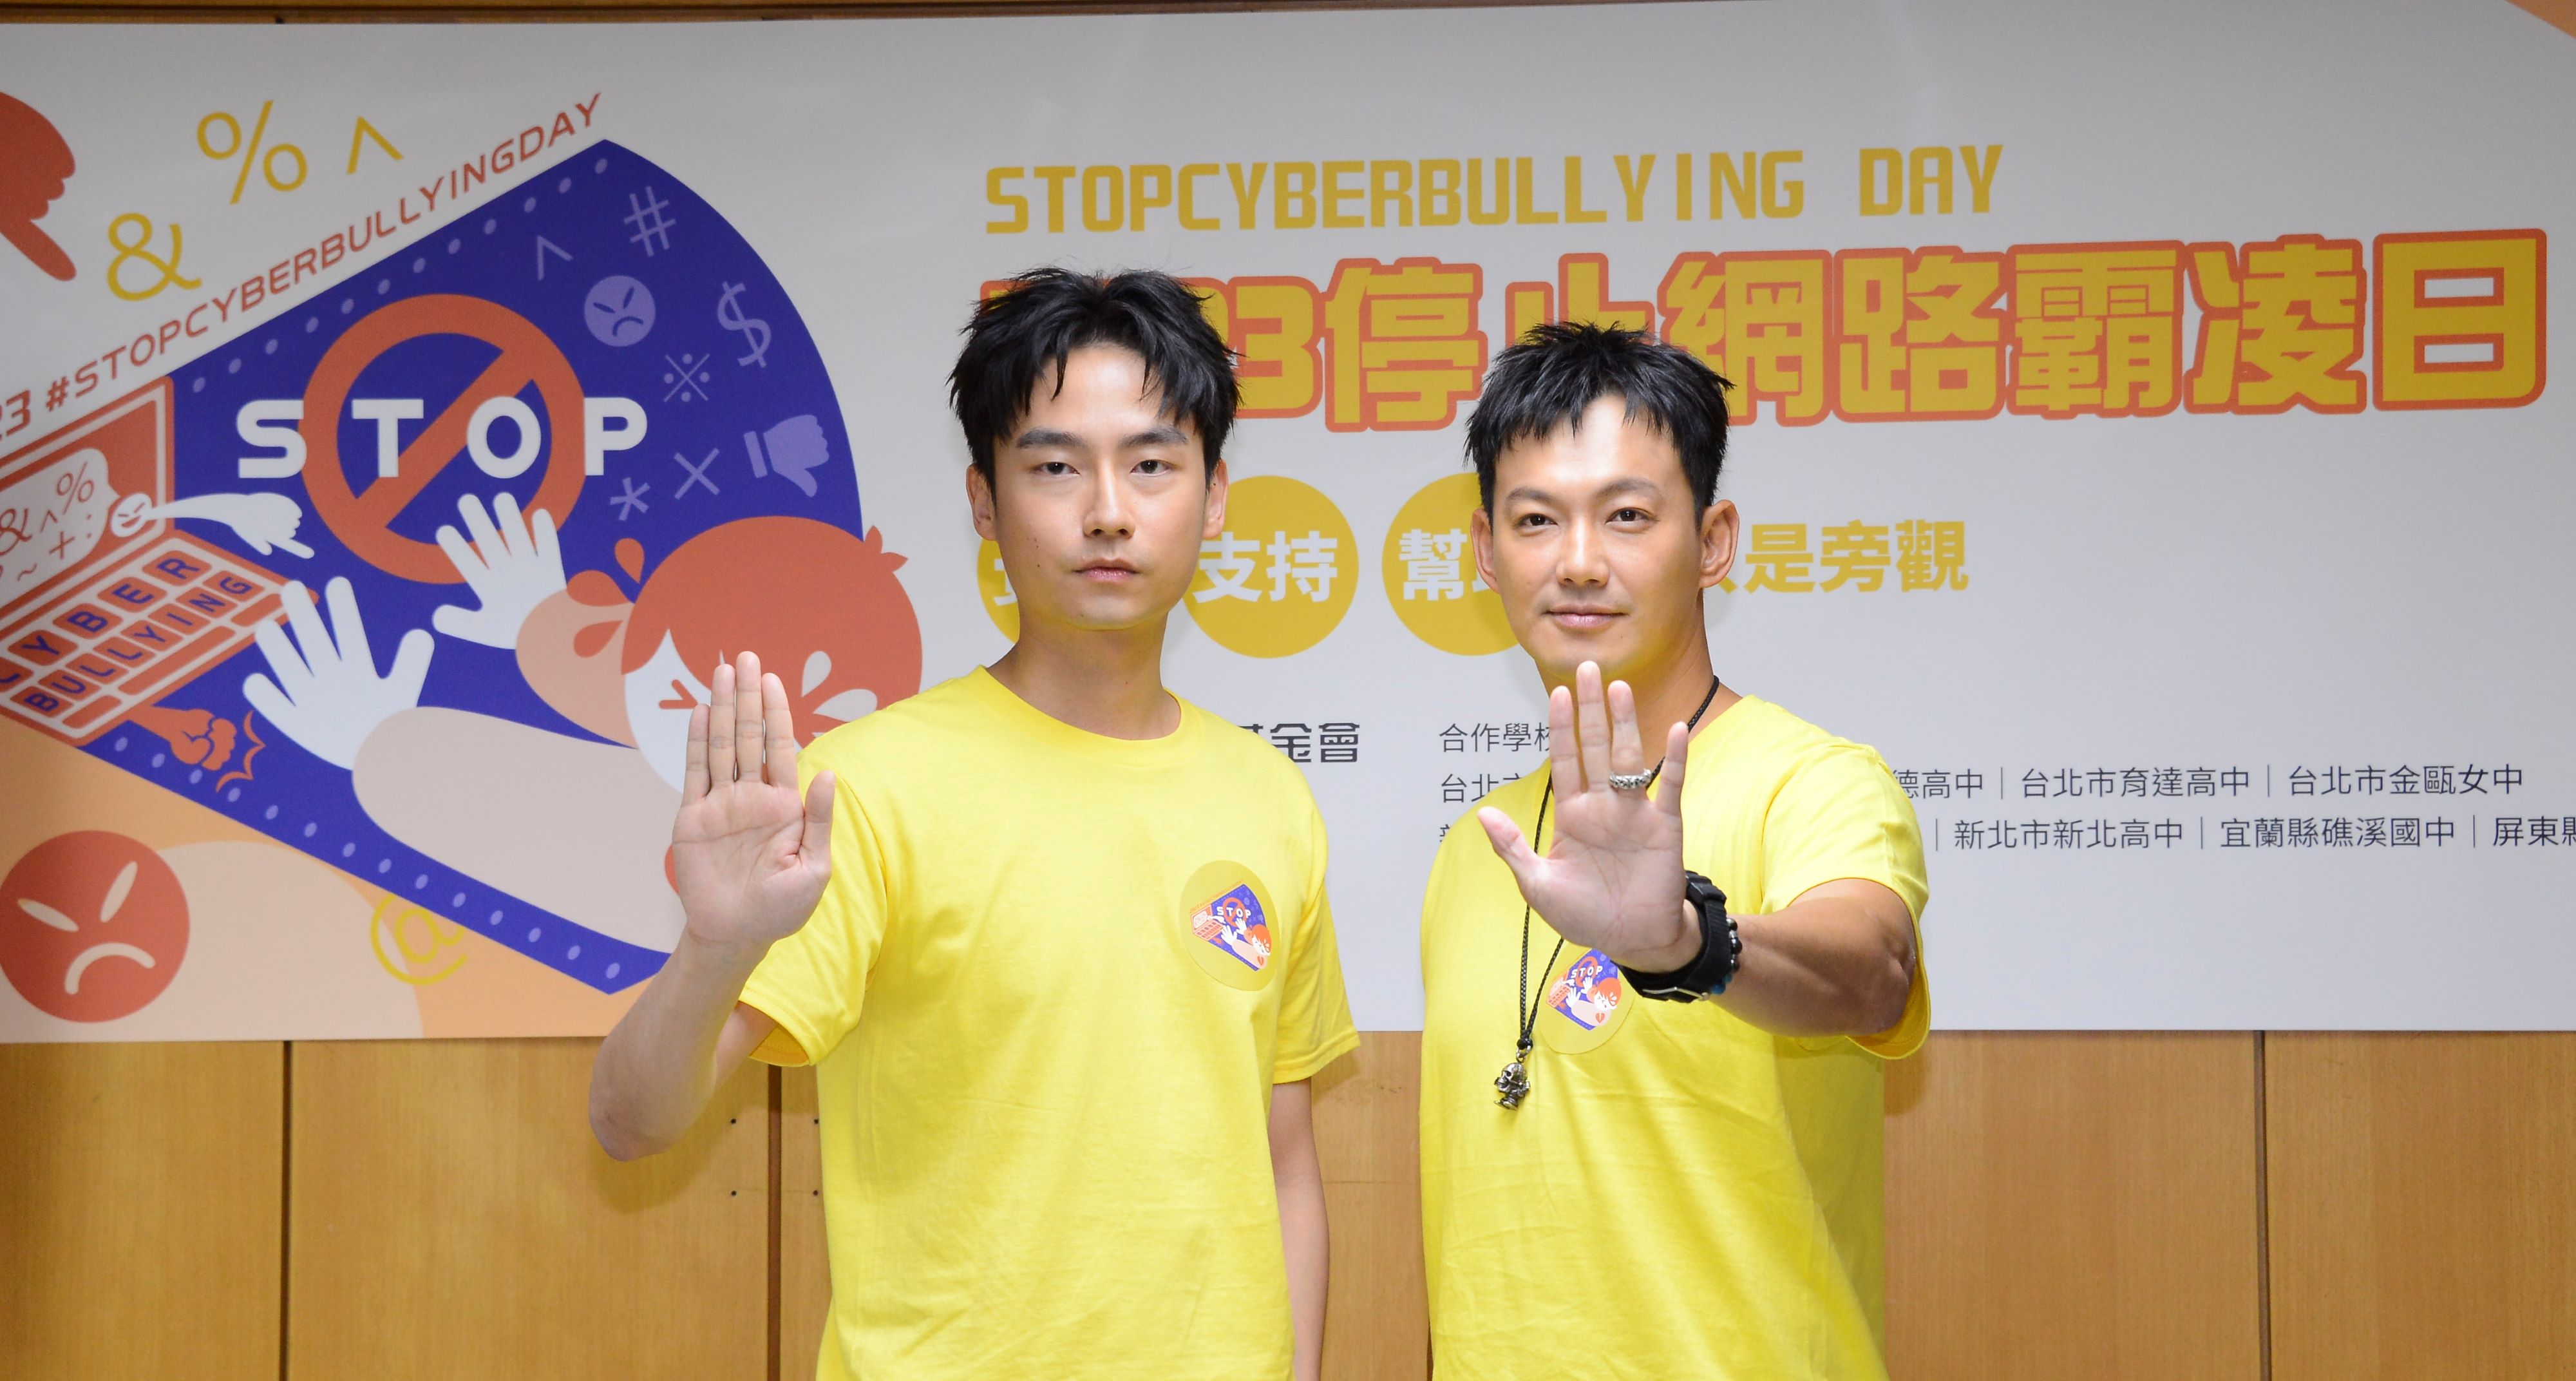 20230616-03-大鶴林鶴軒(左)與威廉廖亦崟(右)出席董氏基金會舉辦之「停止網路霸凌日」宣導記者會，一同呼籲大眾正視網路霸凌造成的傷害，並幫助網路霸凌受害者。